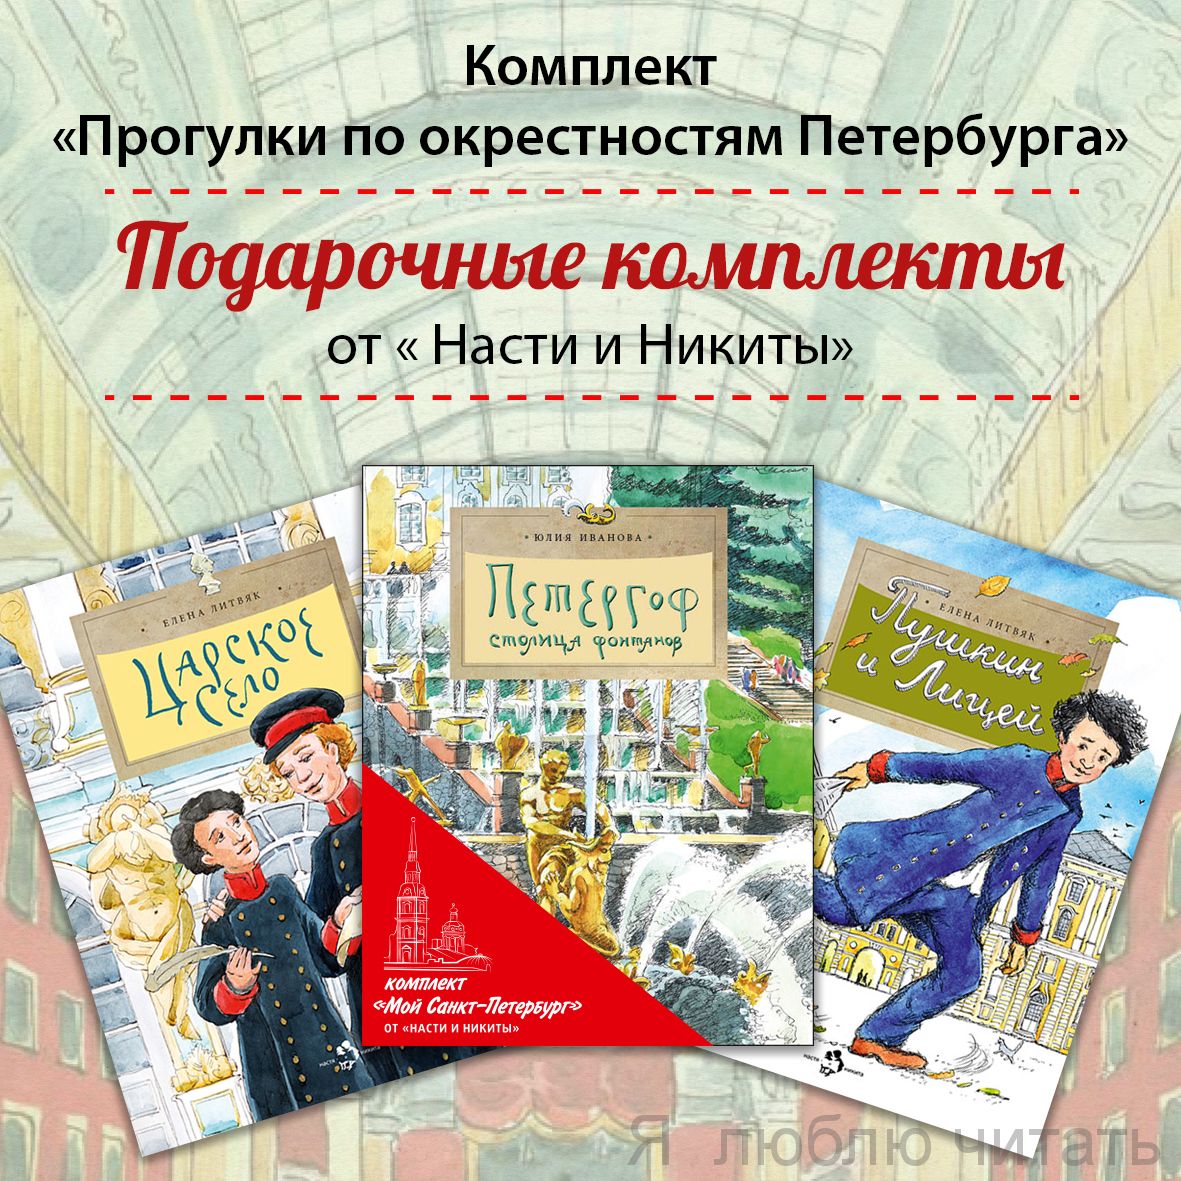 Книжный комплект "Прогулки по окрестностям Петербурга"